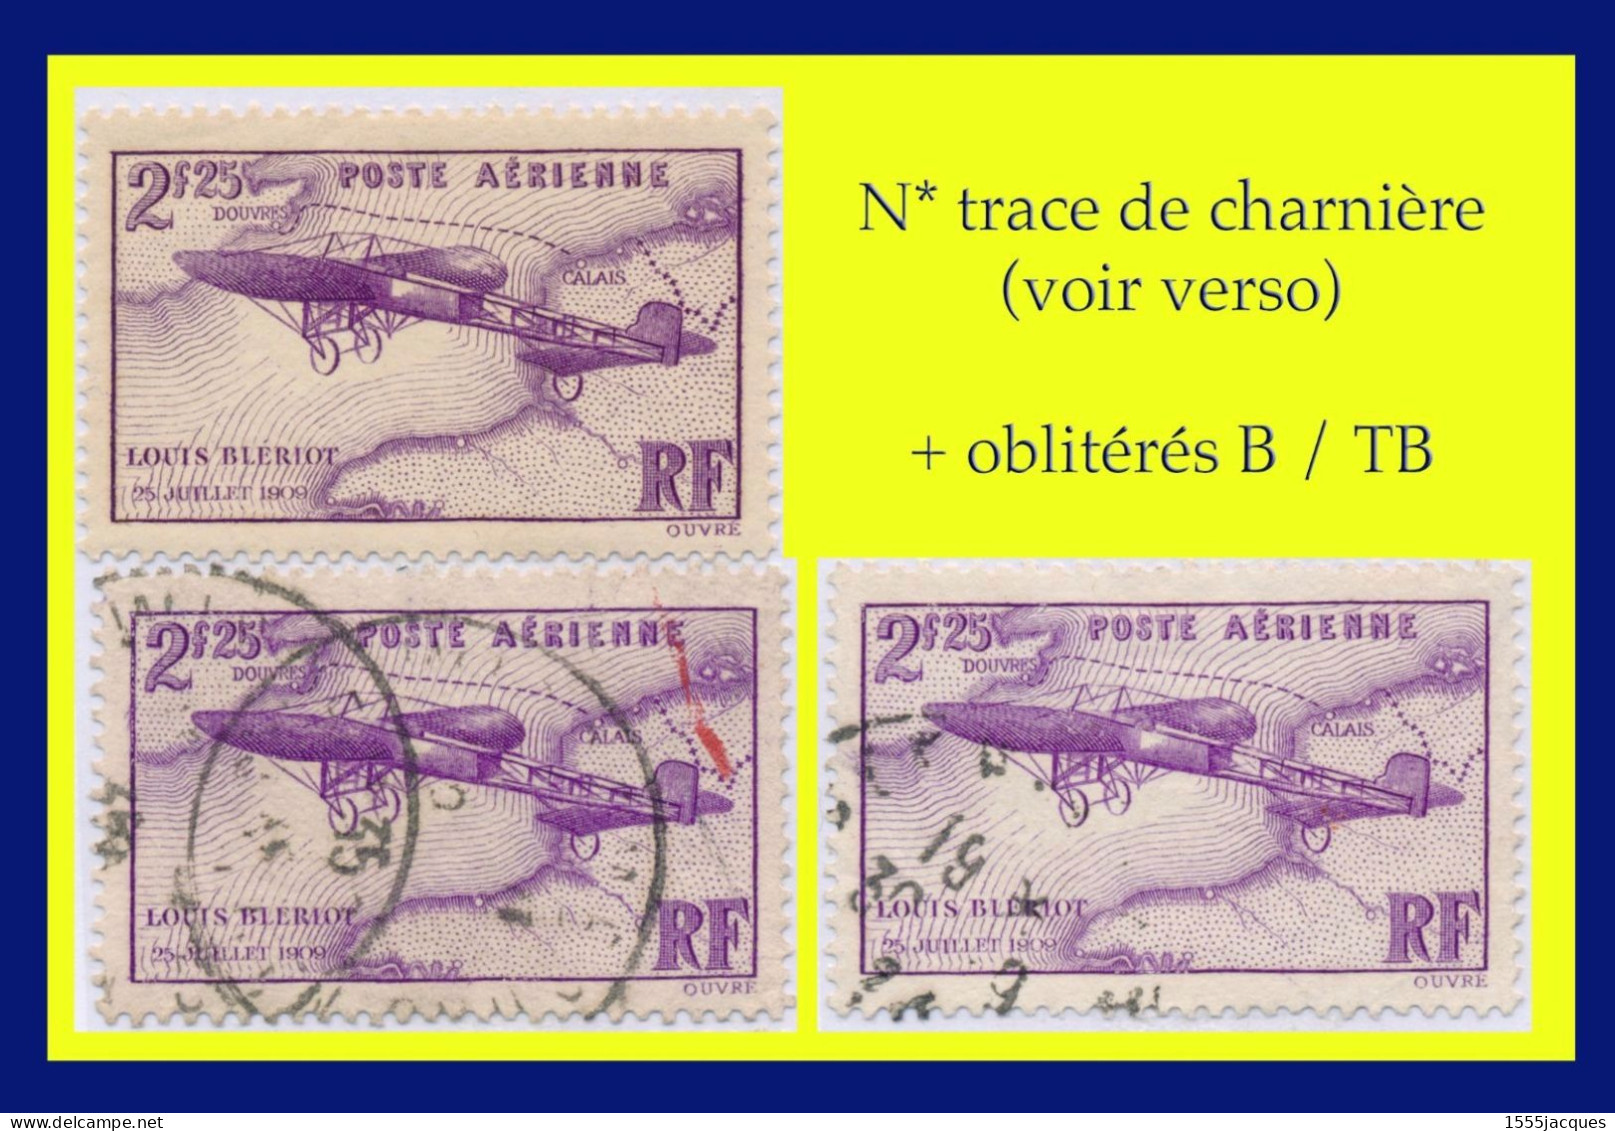 POSTE AÉRIENNE N° 7- LOUIS BLÉRIOT 1934 : 1 EX. N* TRACE DE CHARNIÈRE + 2 EX. OBLITÉRÉS B / TB - (VOIR VERSO DU N*) - 1927-1959 Neufs